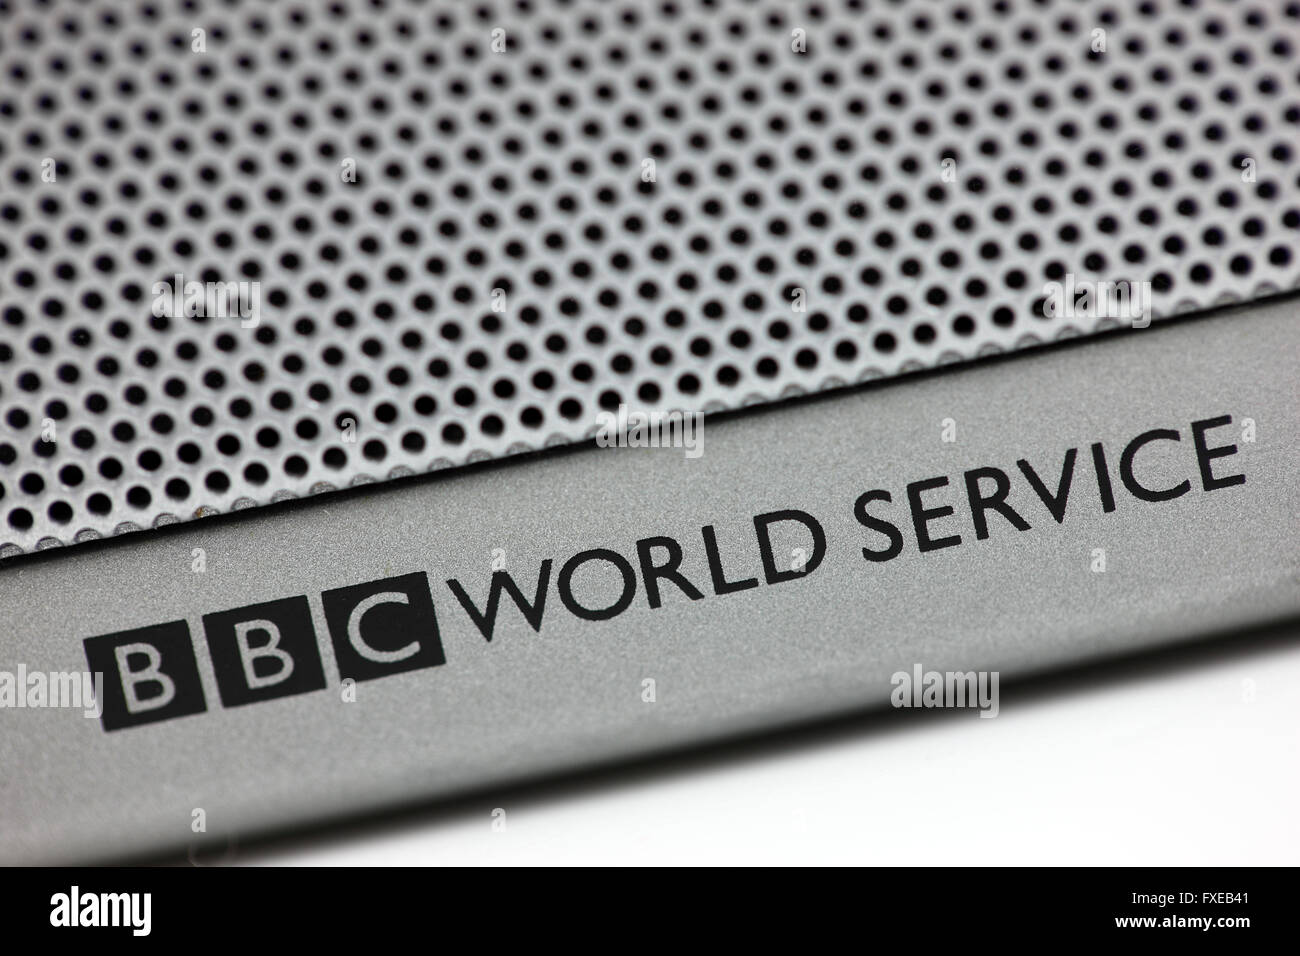 BBC World Service en un radio transmisor demostrando que podía recibir las comunicaciones de onda corta. Foto de stock